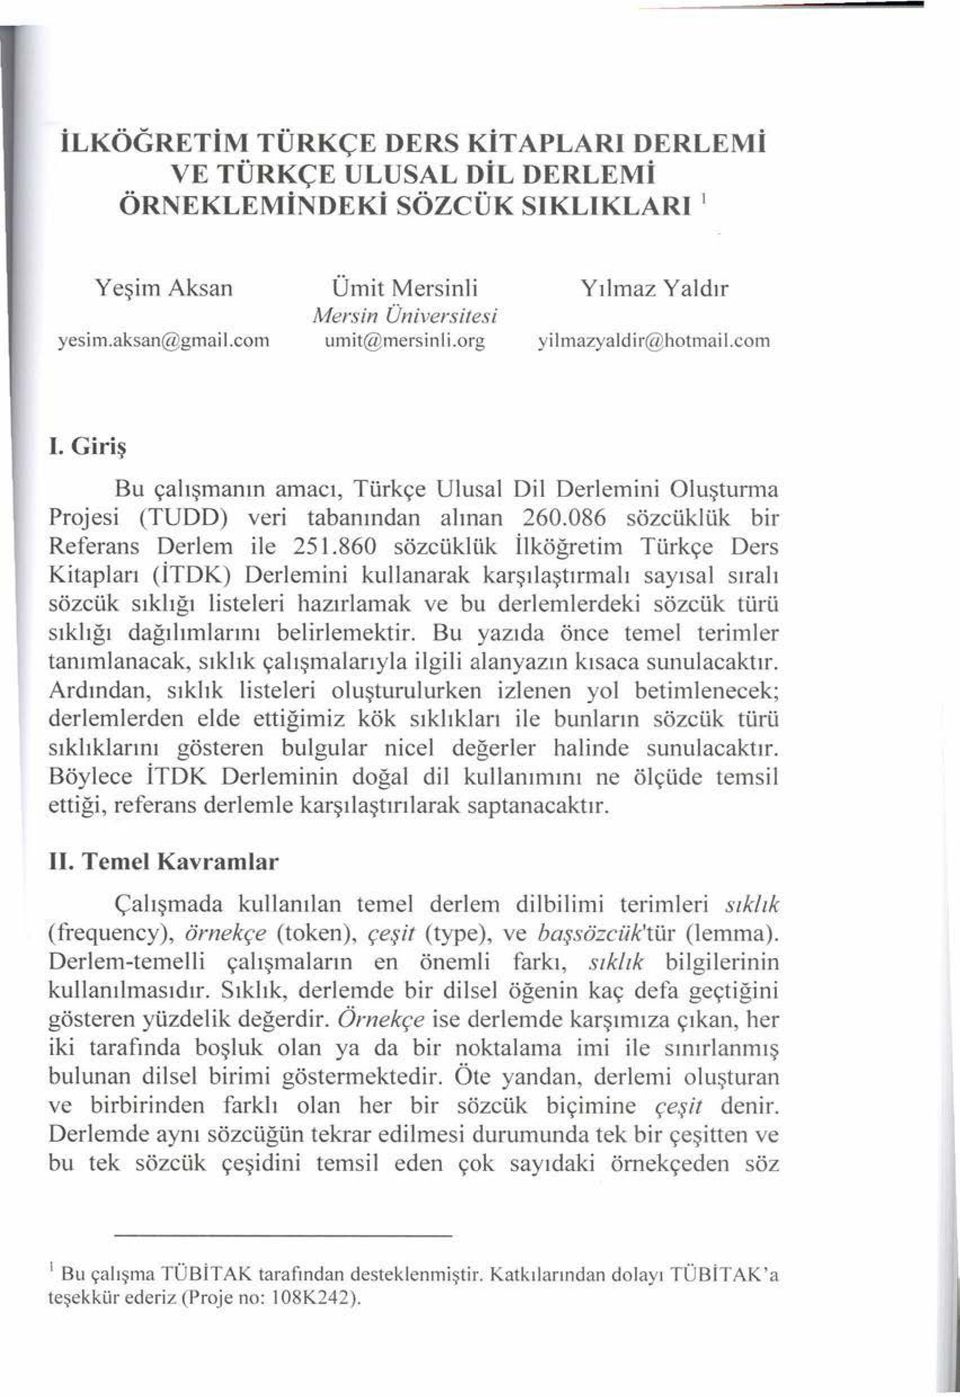 860 sözcüklük İlköğretim Türkçe Ders Kitapları (İTDK) Derlemini kullanarak karşılaştırmalı sayısal sıralı sözcük sıklığı listeleri hazırlamak ve bu derlemlerdeki sözcük türü sıklığı dağılımlarını